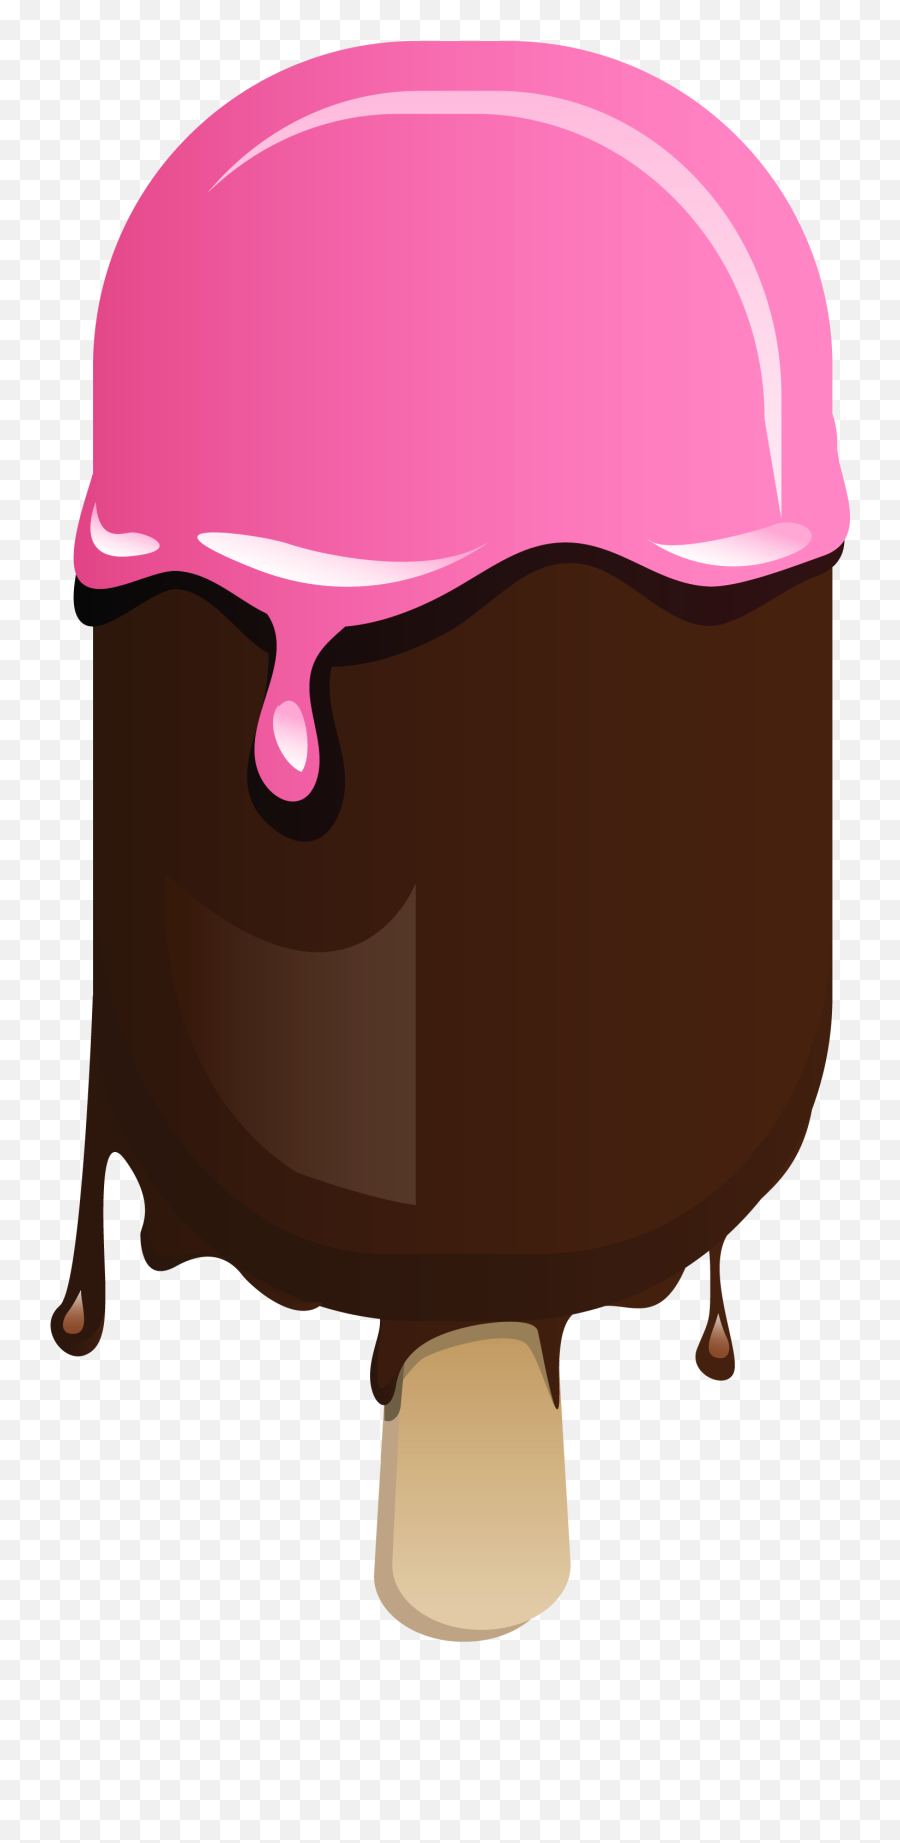 Ice Cream Clipart Free - 68 Cliparts Icecream Popsocle Clip Art Emoji,Free Clipart